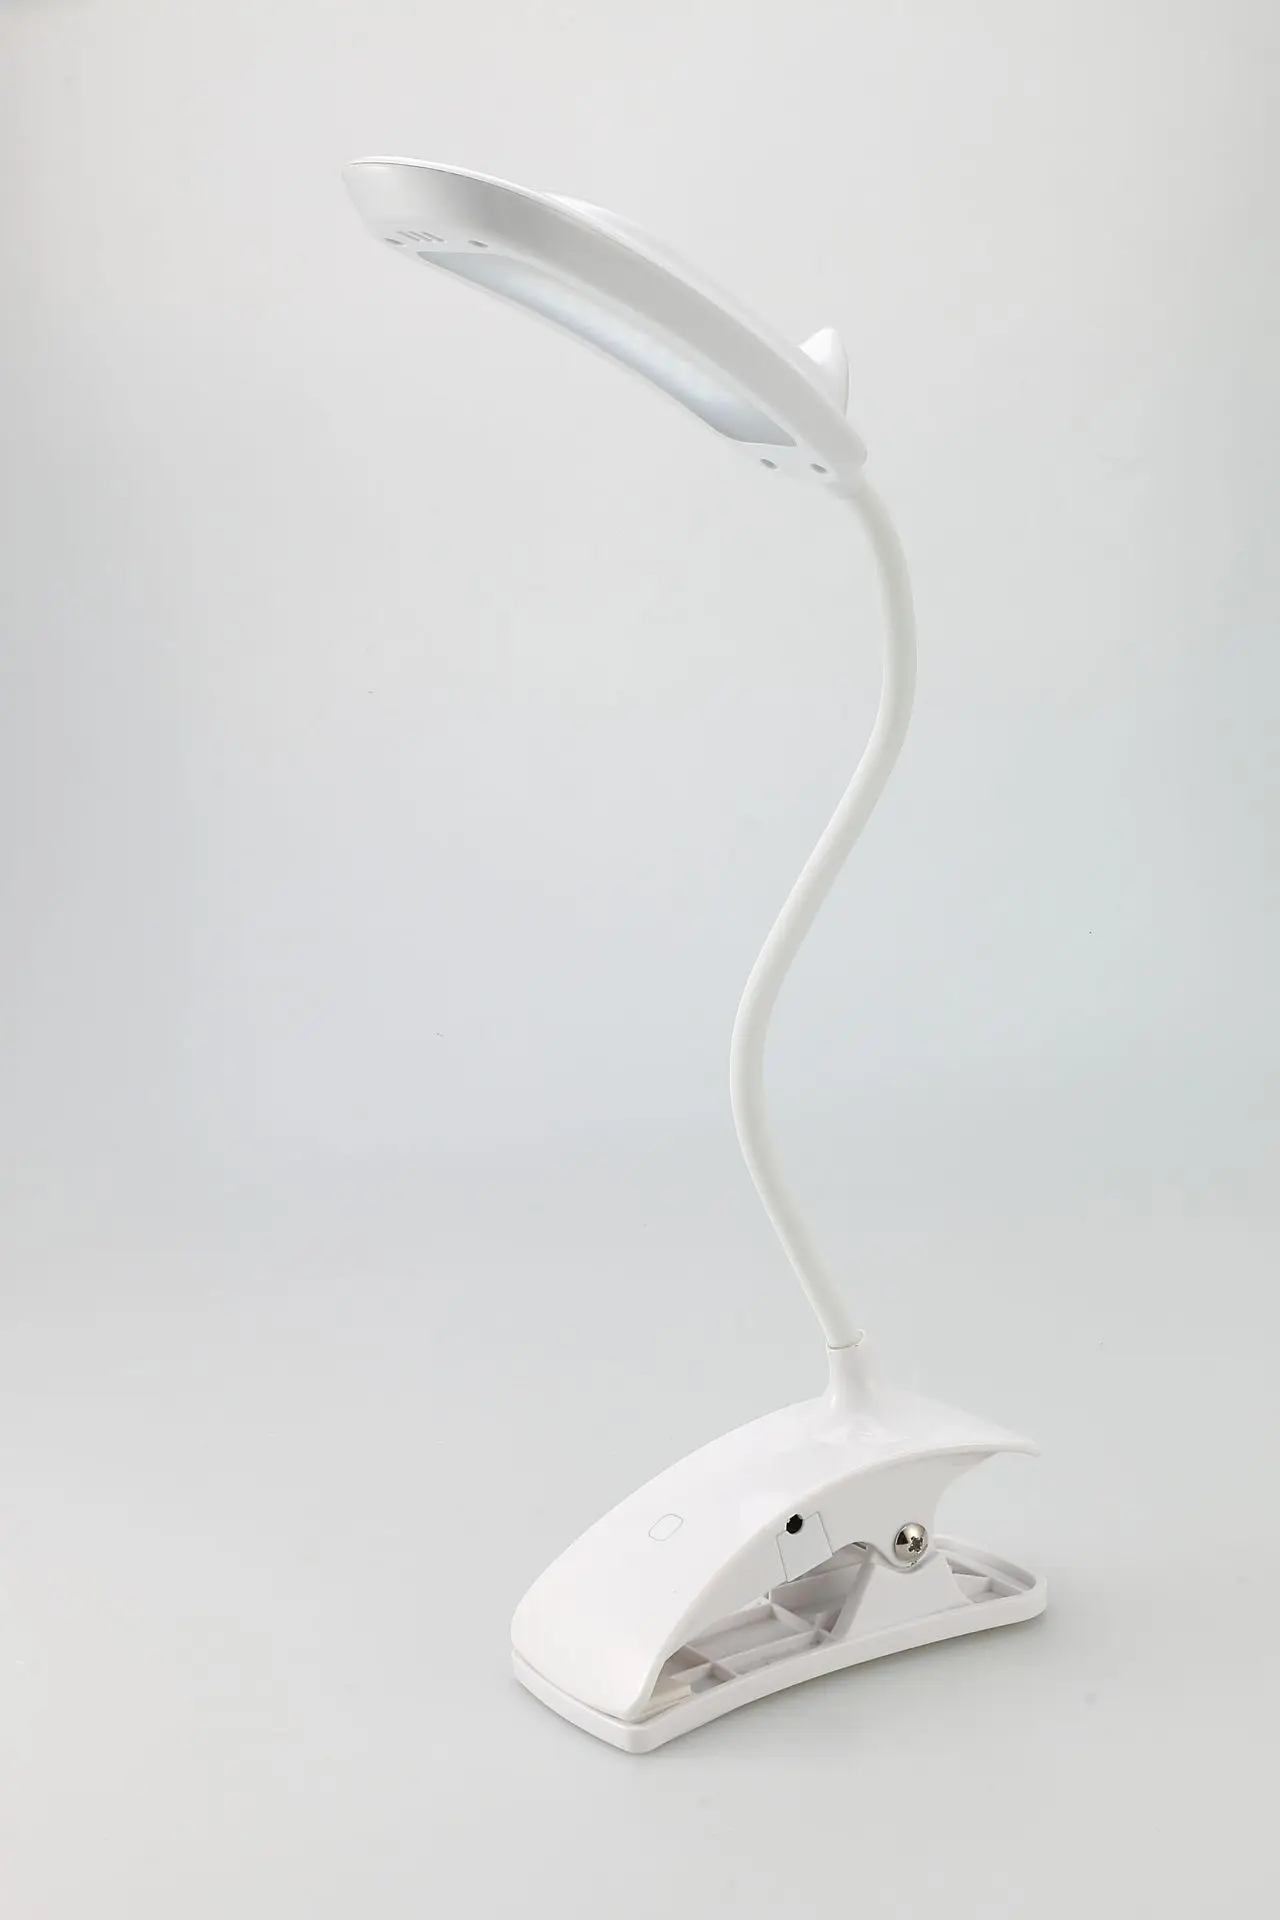 BUYBAY светодиодный настольный светильник 18 светодиодный s Настольный светильник с зажимом для настольной лампы Защита глаз гибкий, в виде гусиной шеи свет для изучения чтения-белый